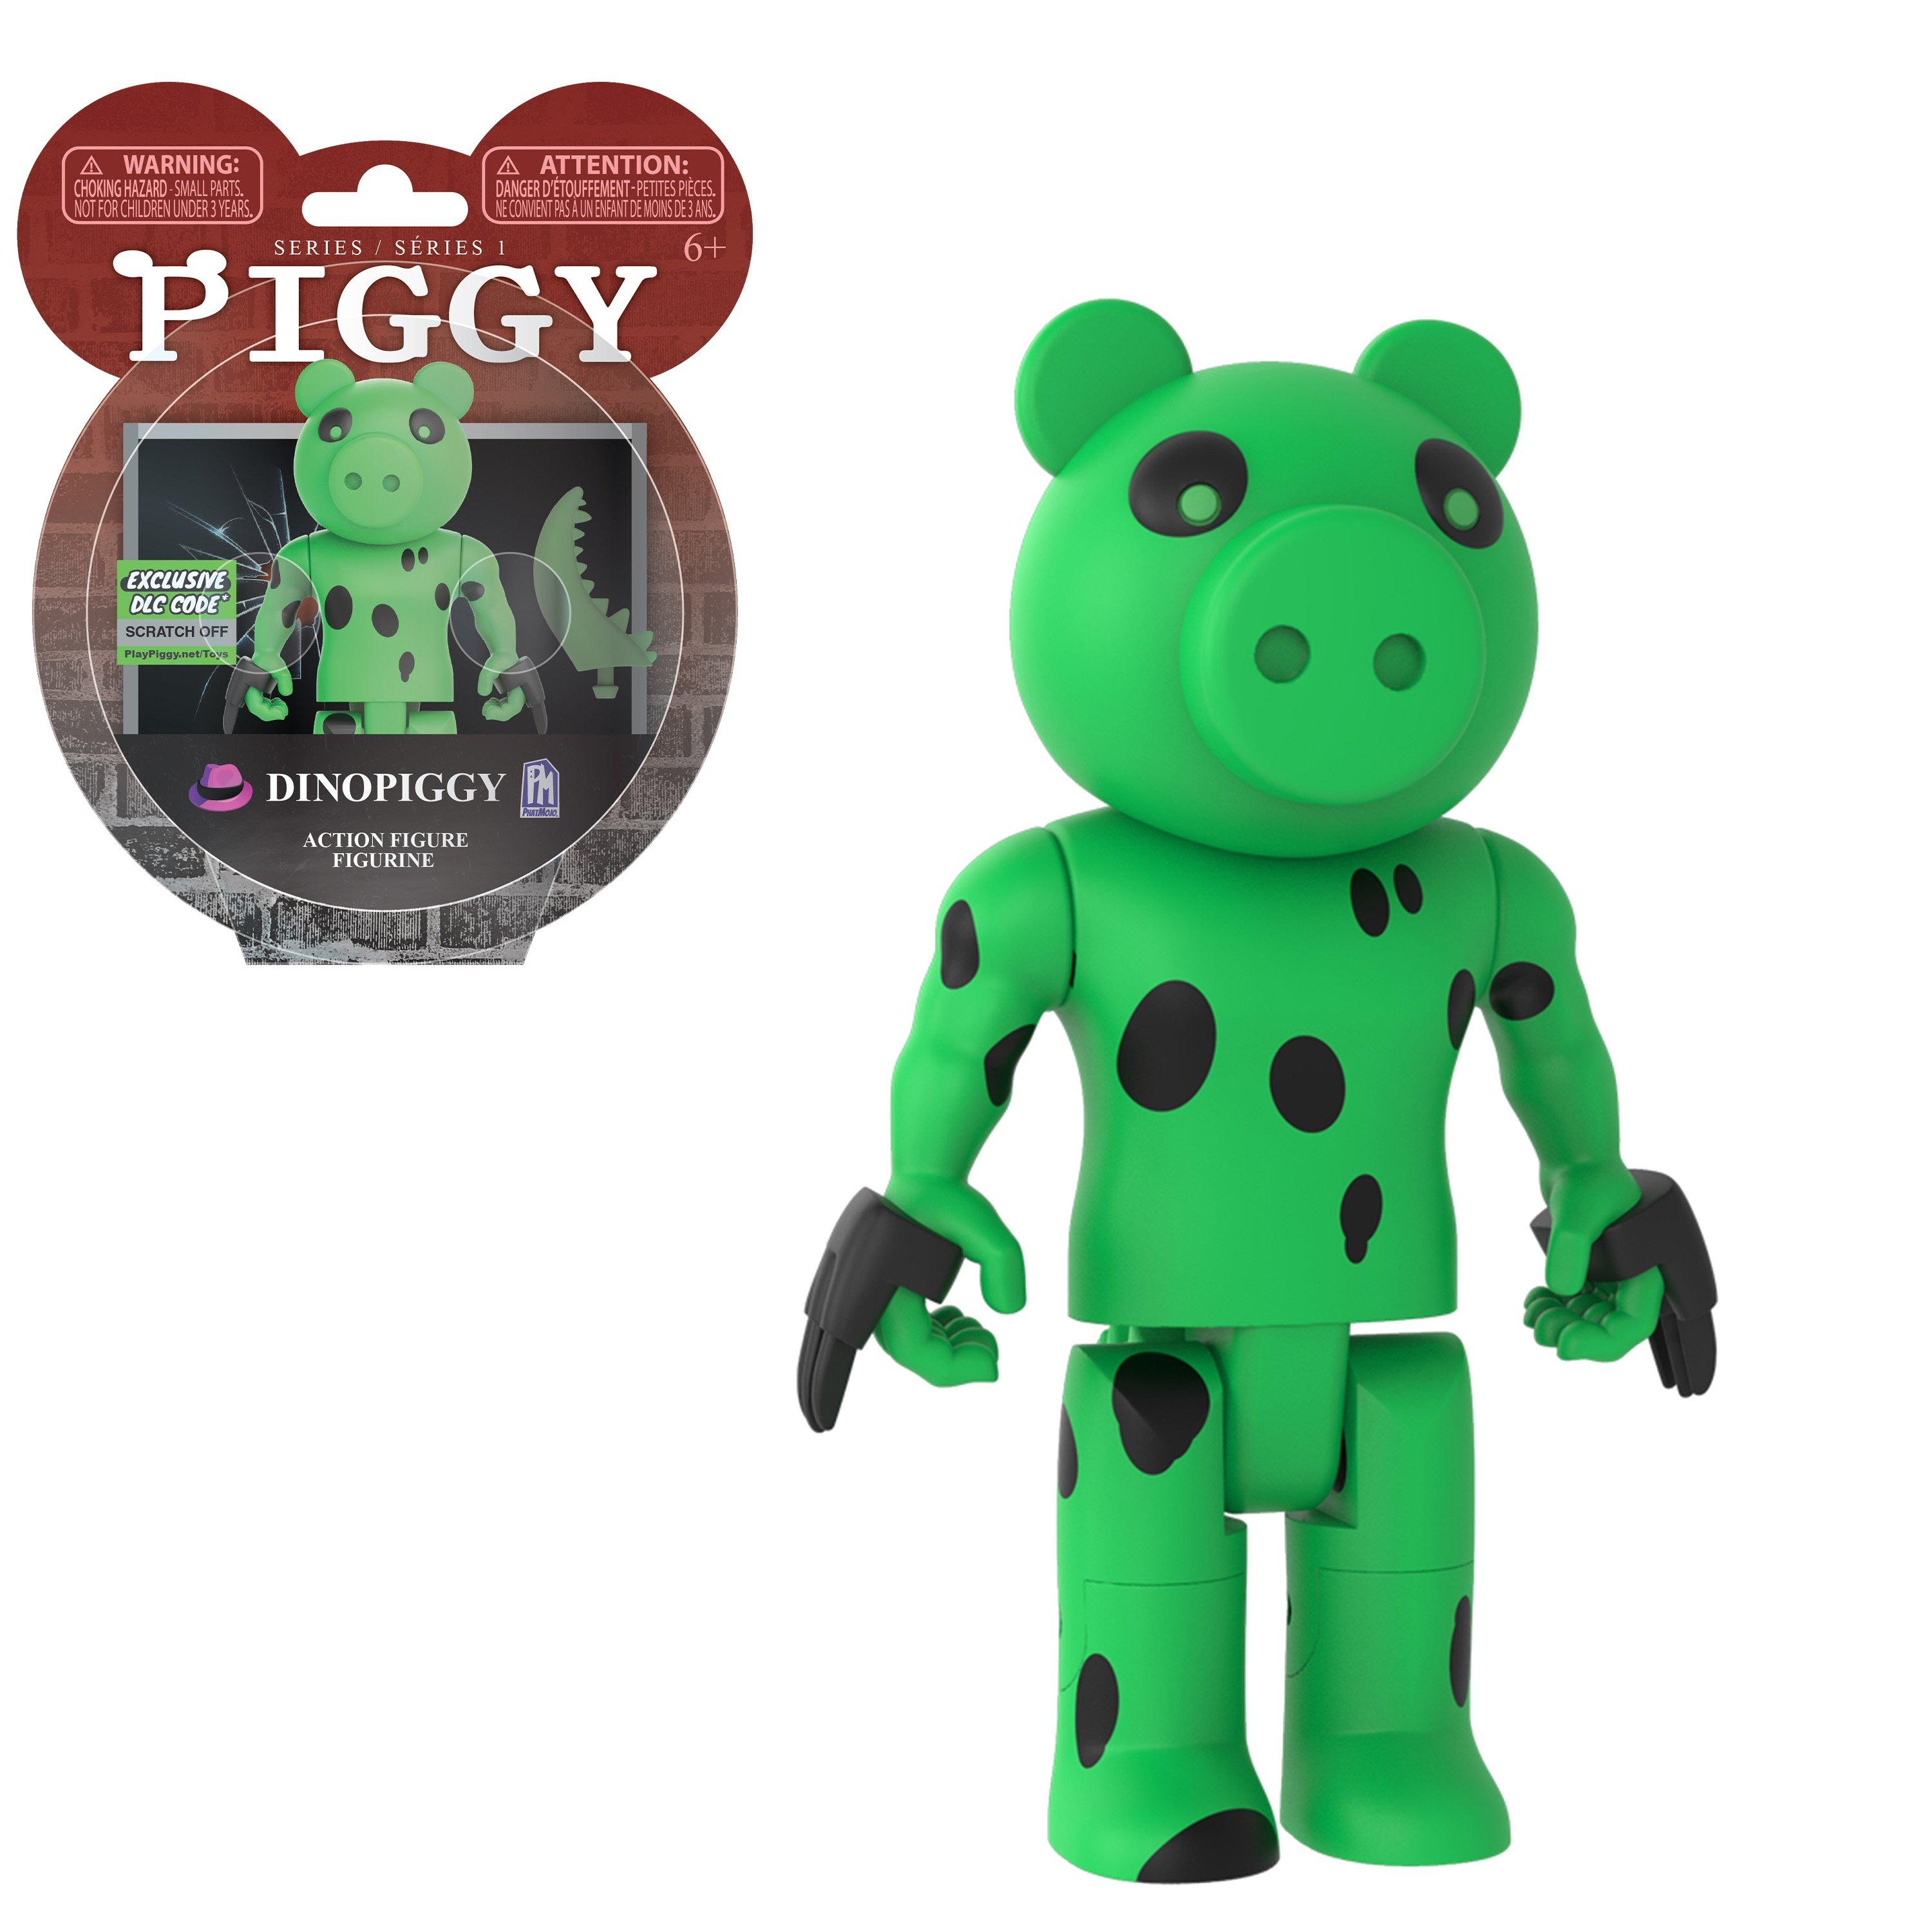 Piggy Dinopiggy Series 1 Action Figure Gamestop - roblox piggy green key